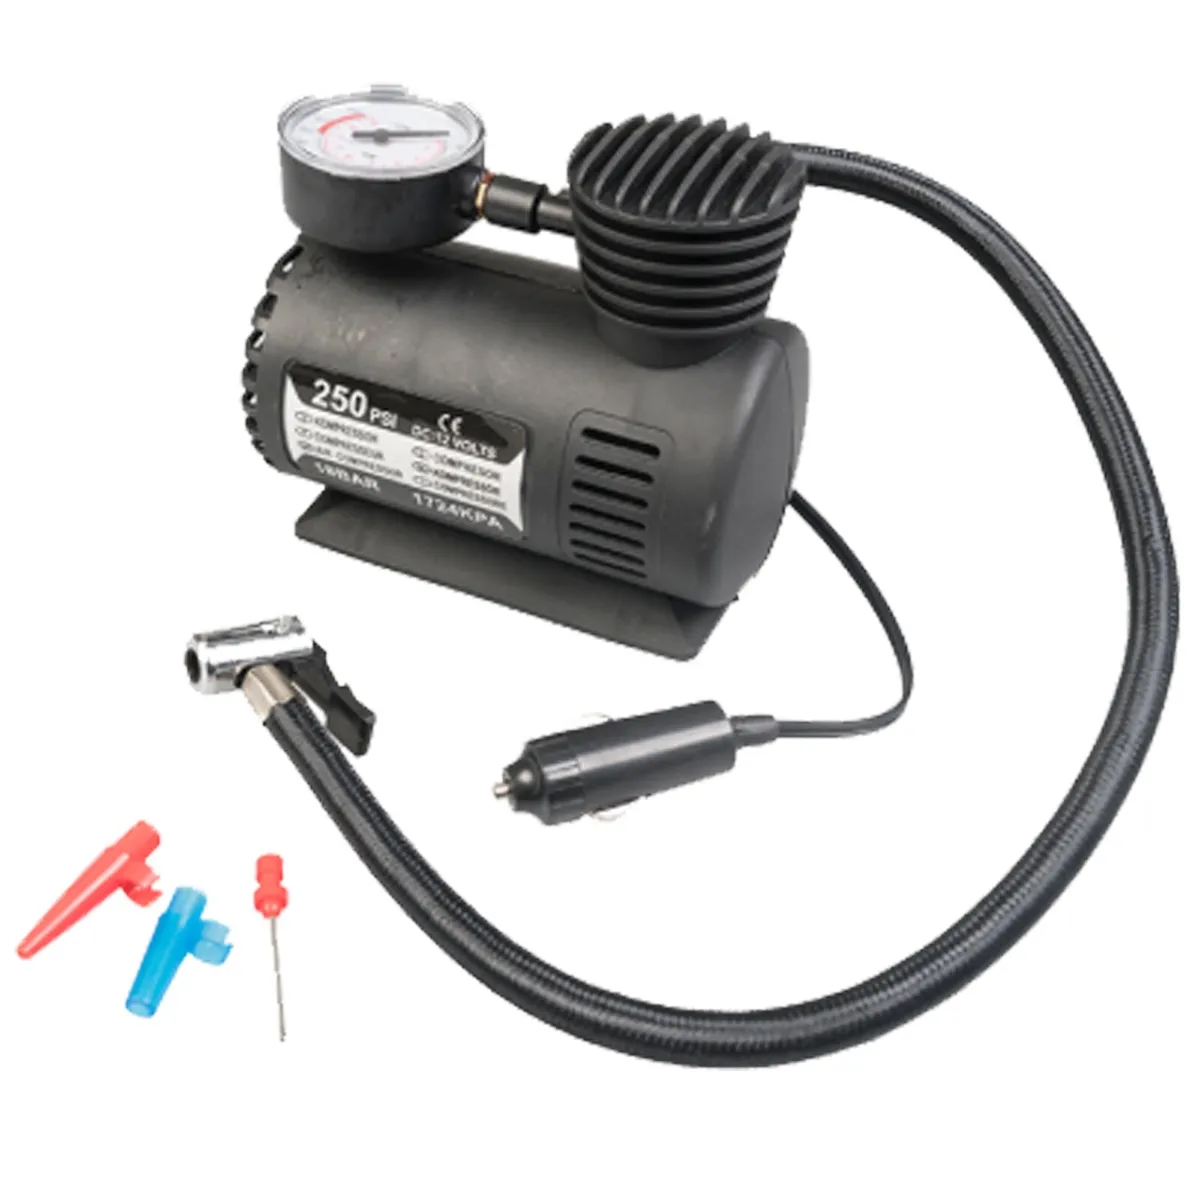 4. TireTek RX-i Digital Portable Air Compressor Pump